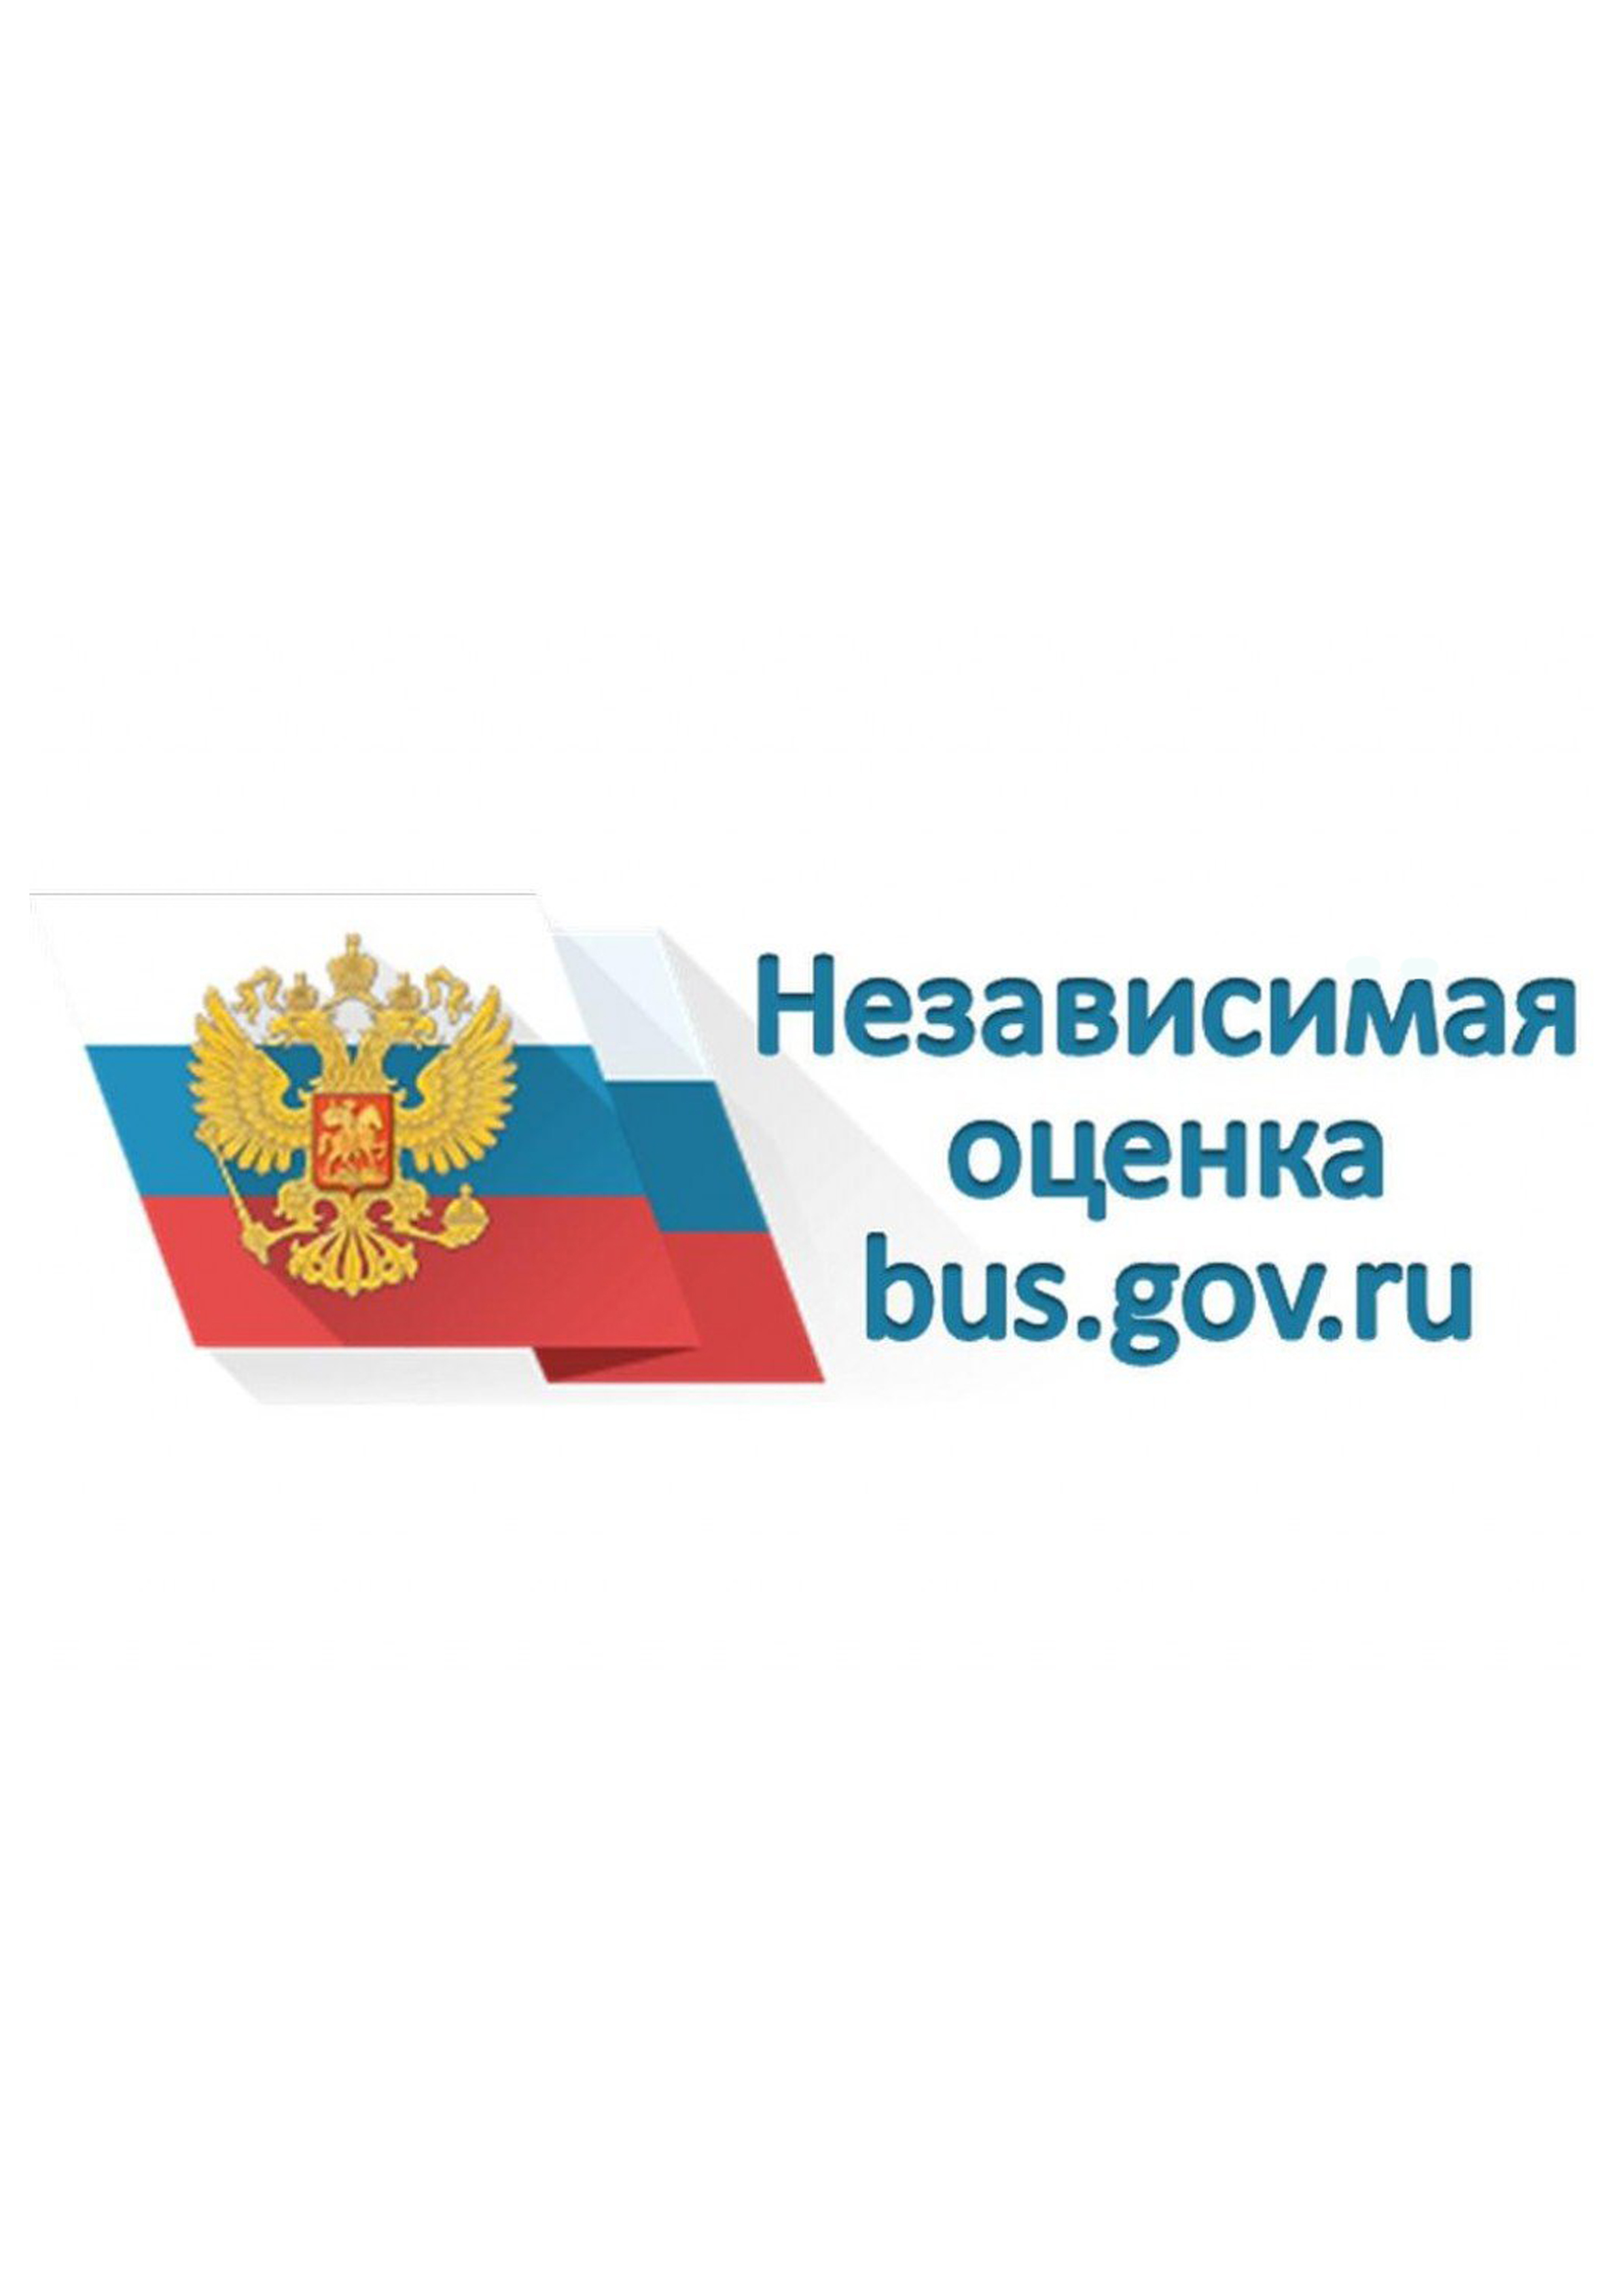 Отчеты бас гов ру. Бас гов. Баннер бас гов. Логотип сайта Bus gov. Независимая оценка качества лого.